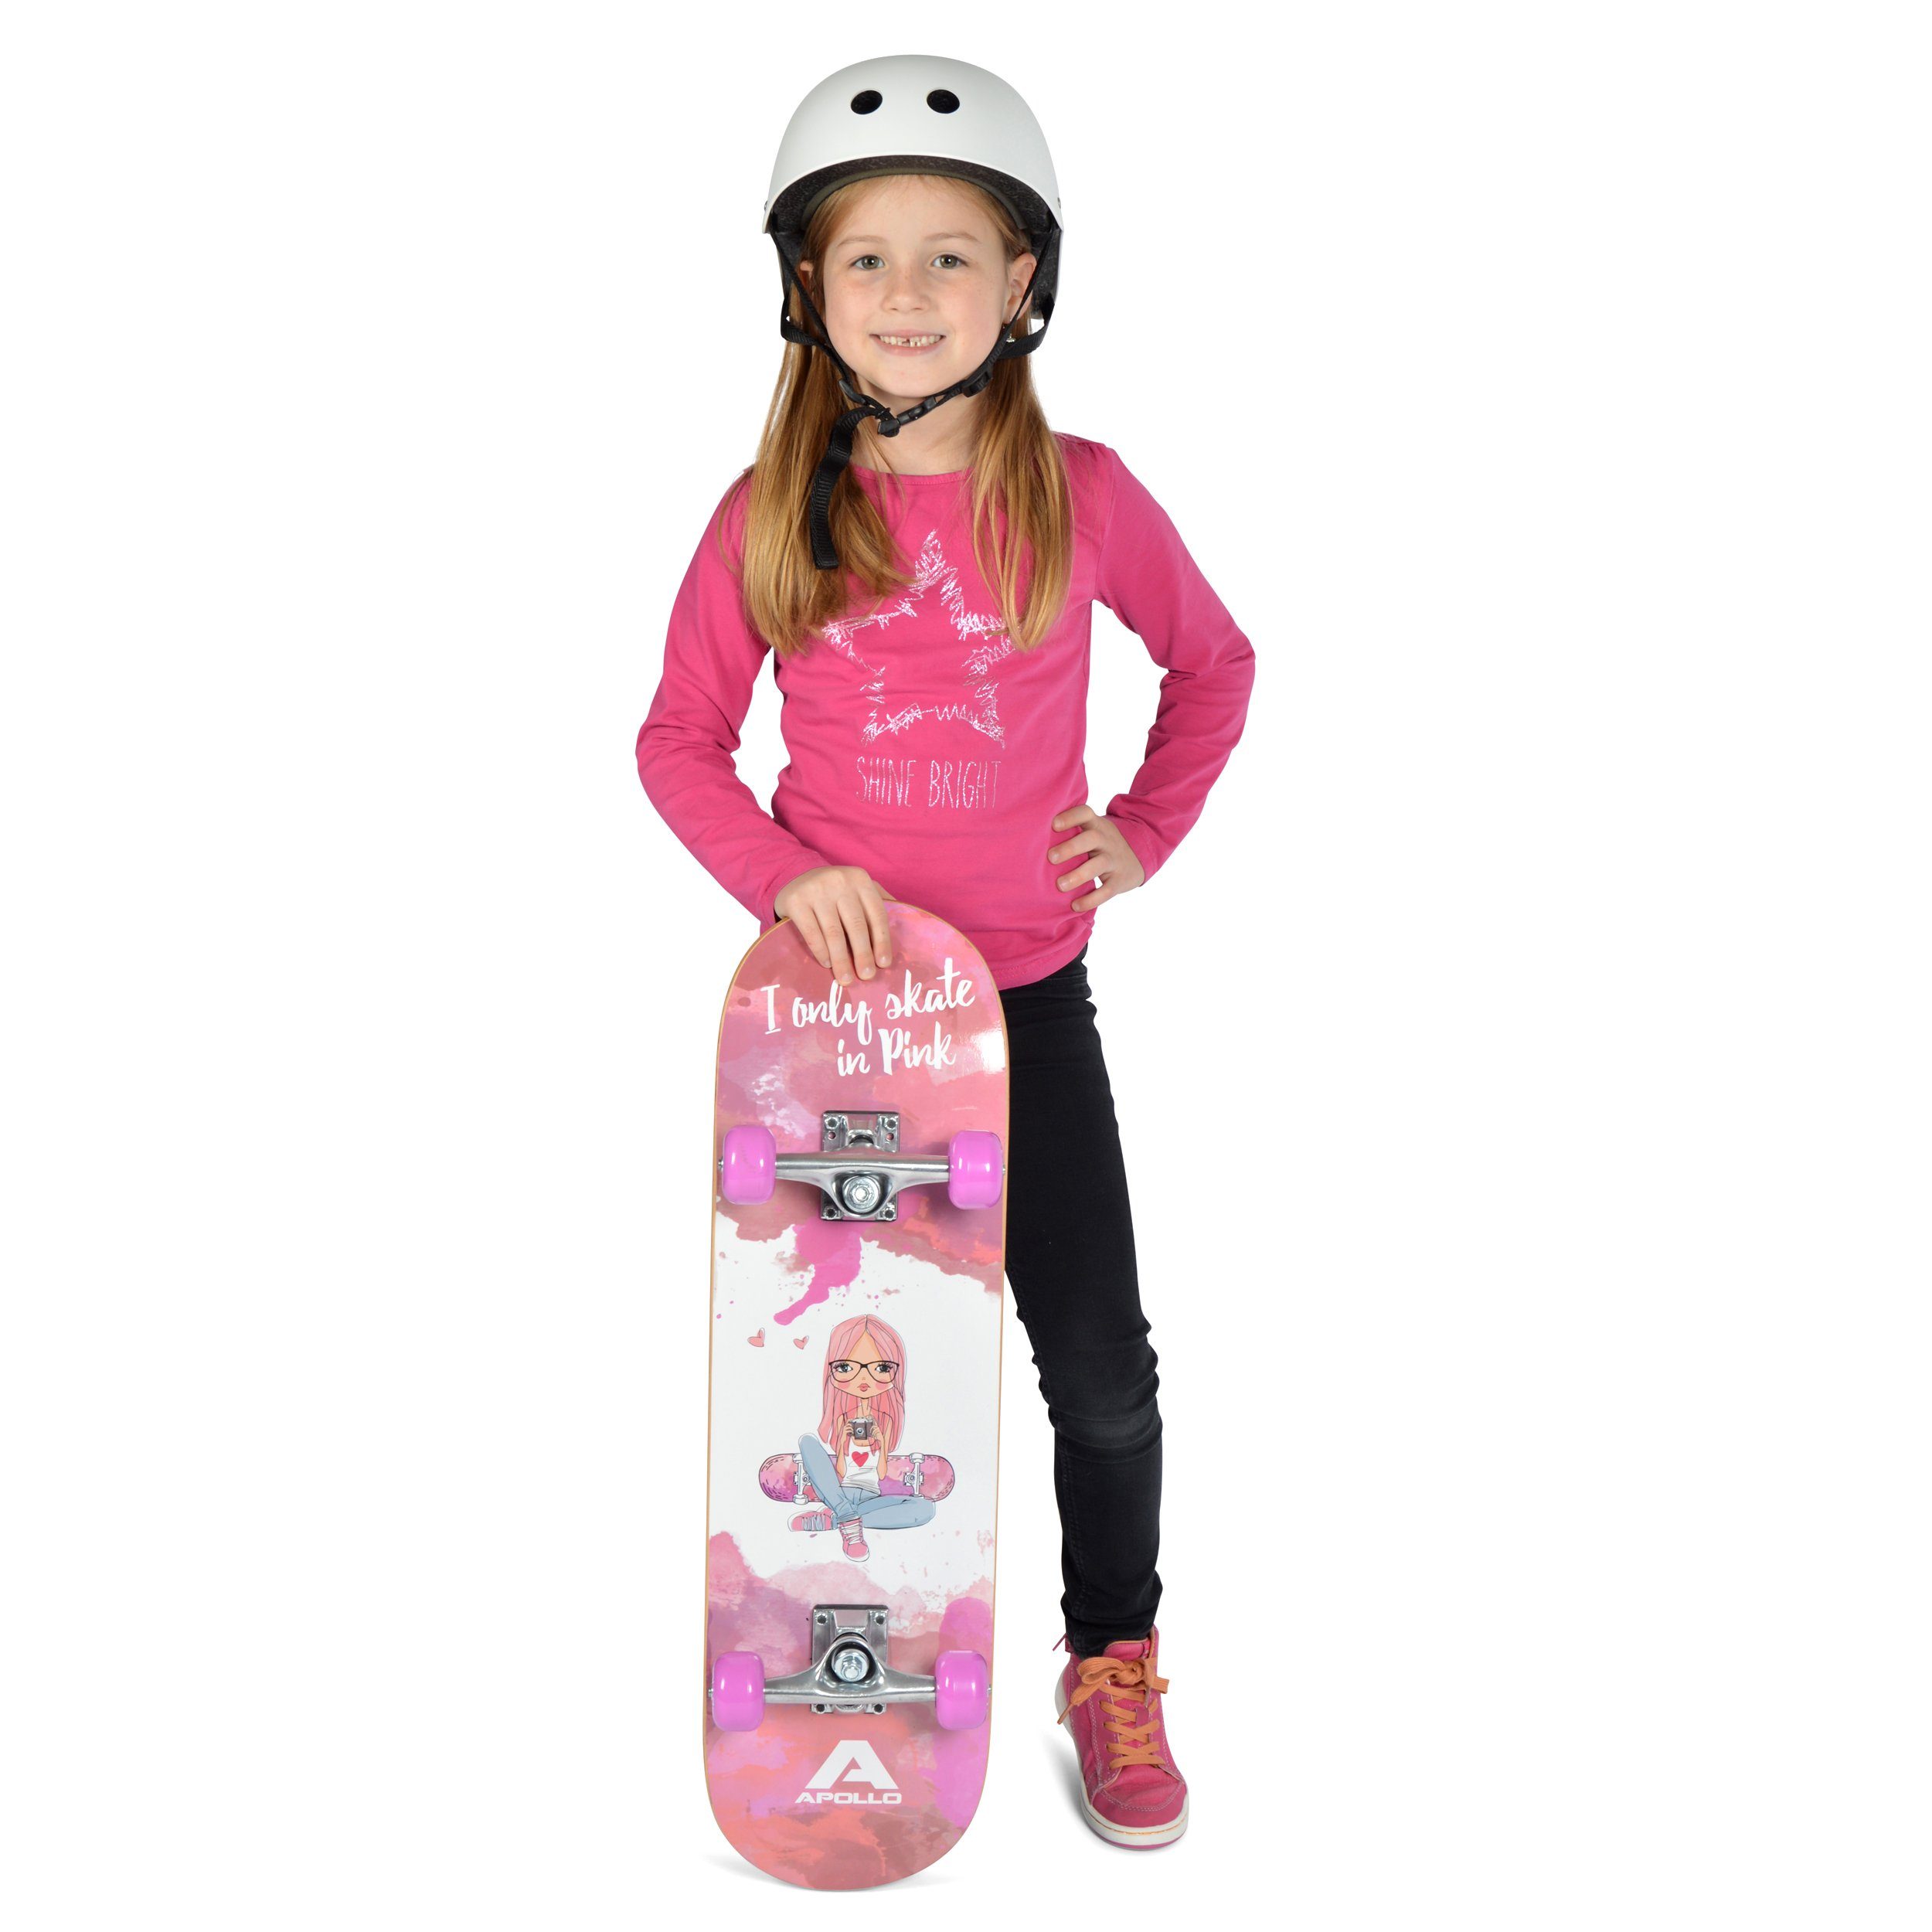 Kinderskateboard und Kinder, 28" Teens für Kinderskateboard, Skaterprincess Skateboard Apollo Kids